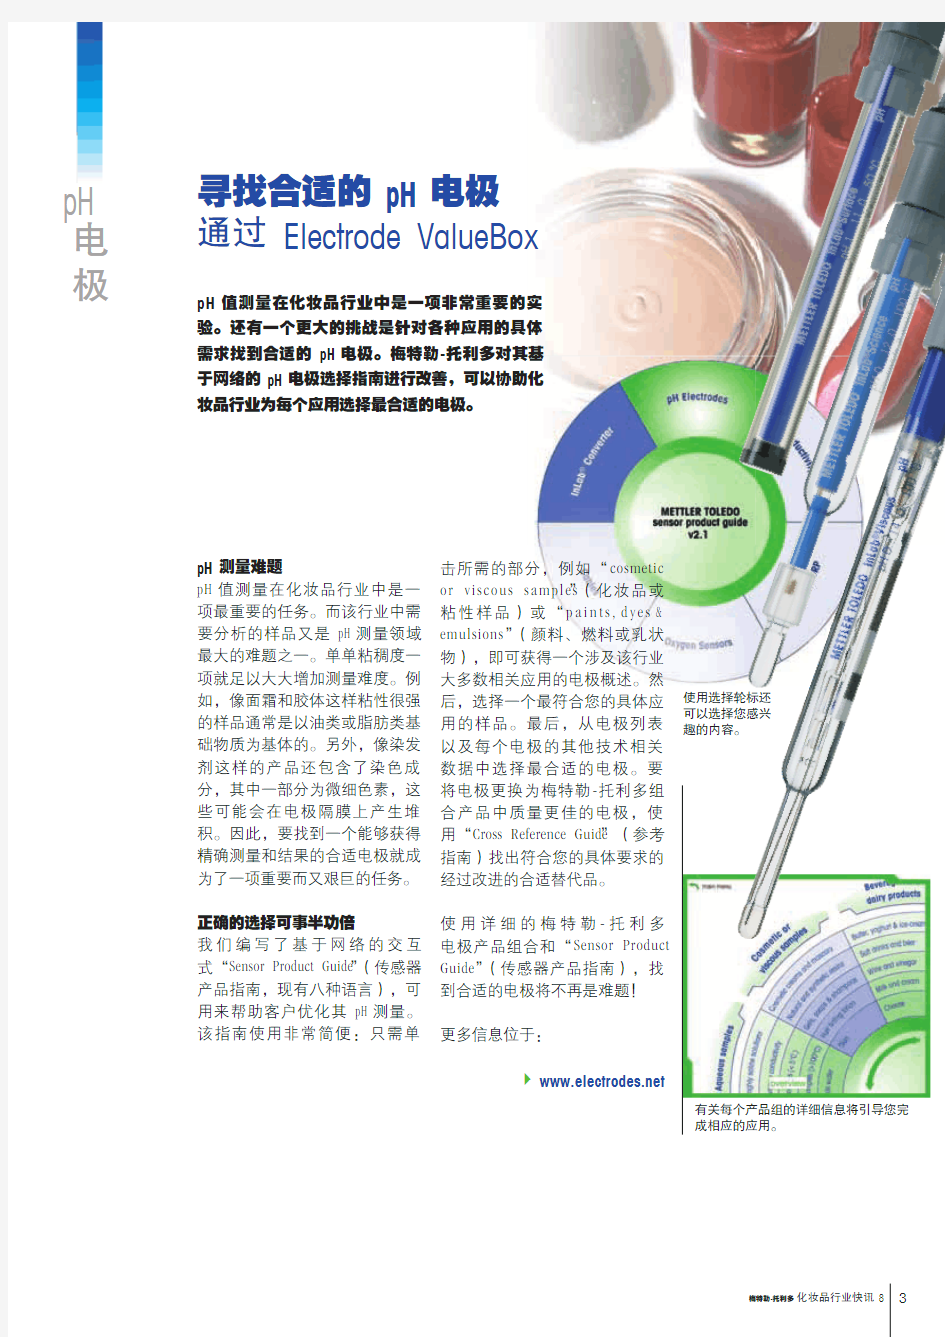 梅特勒-托利多pH应用案例_寻找合适的pH电极 通过Electrode ValueBox